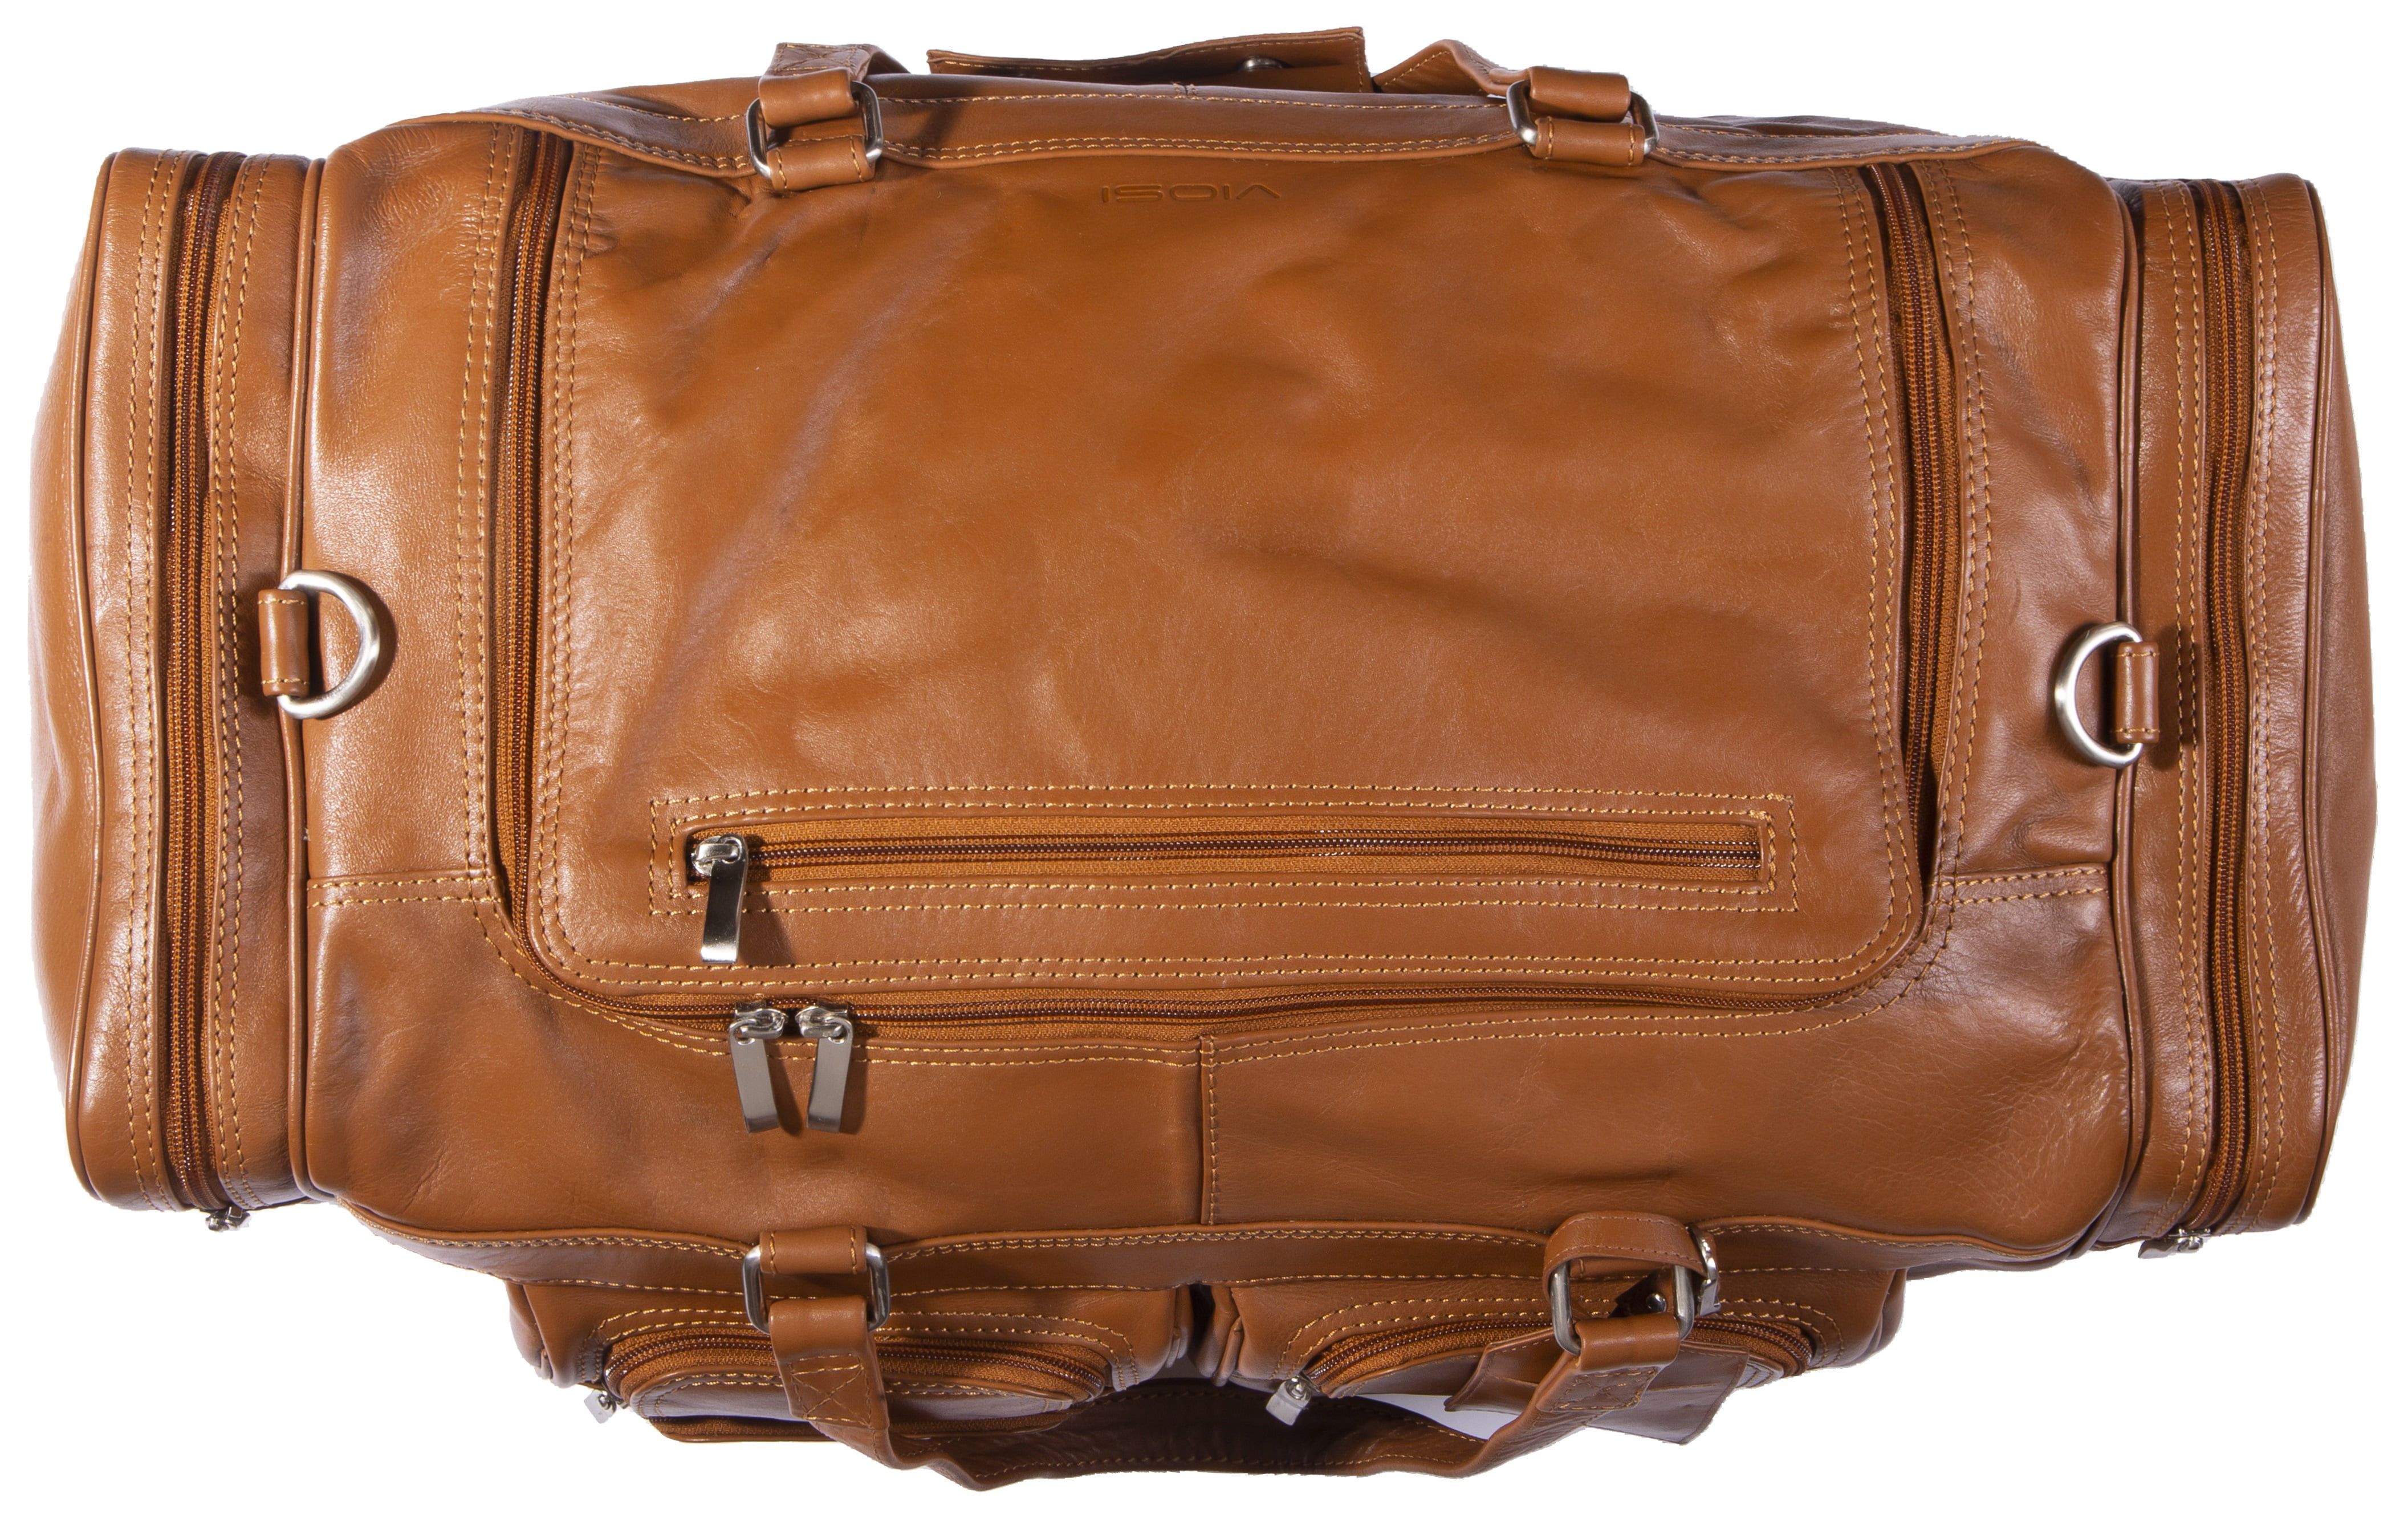 Luxury leather backpack travel bag weekender sports bag gym bag leather  shoulder ladies mens bag satchel original made in Italy dark brown